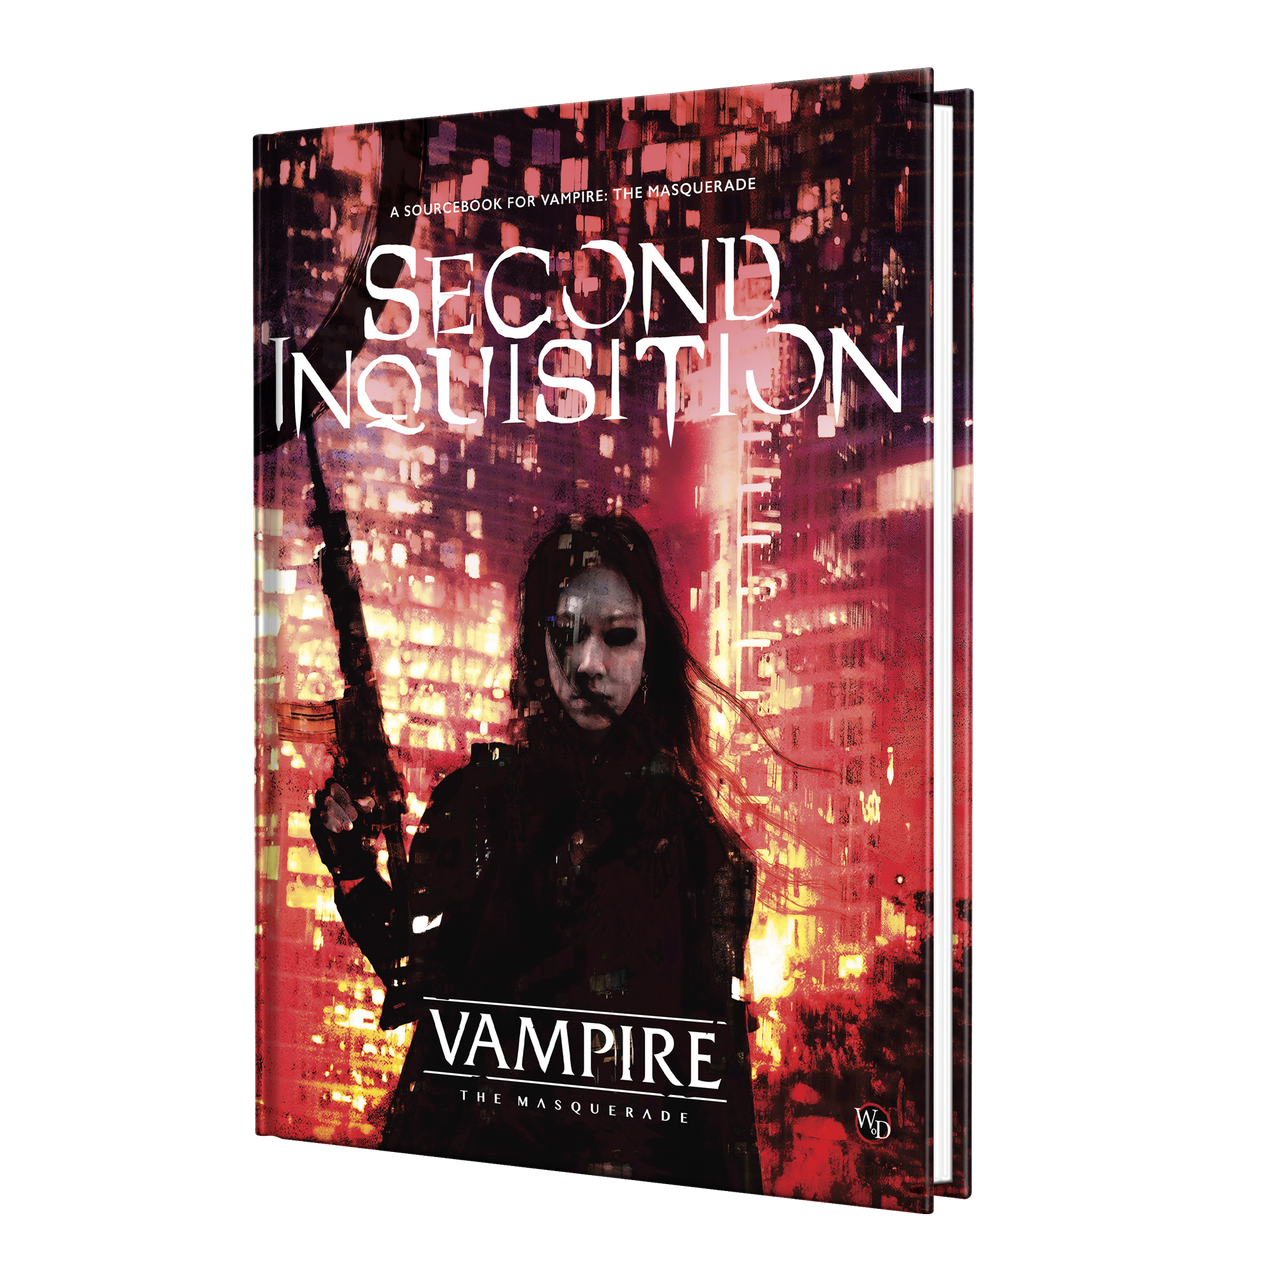 Vampire: the Masquerade Cities of Darkness Volume 3 